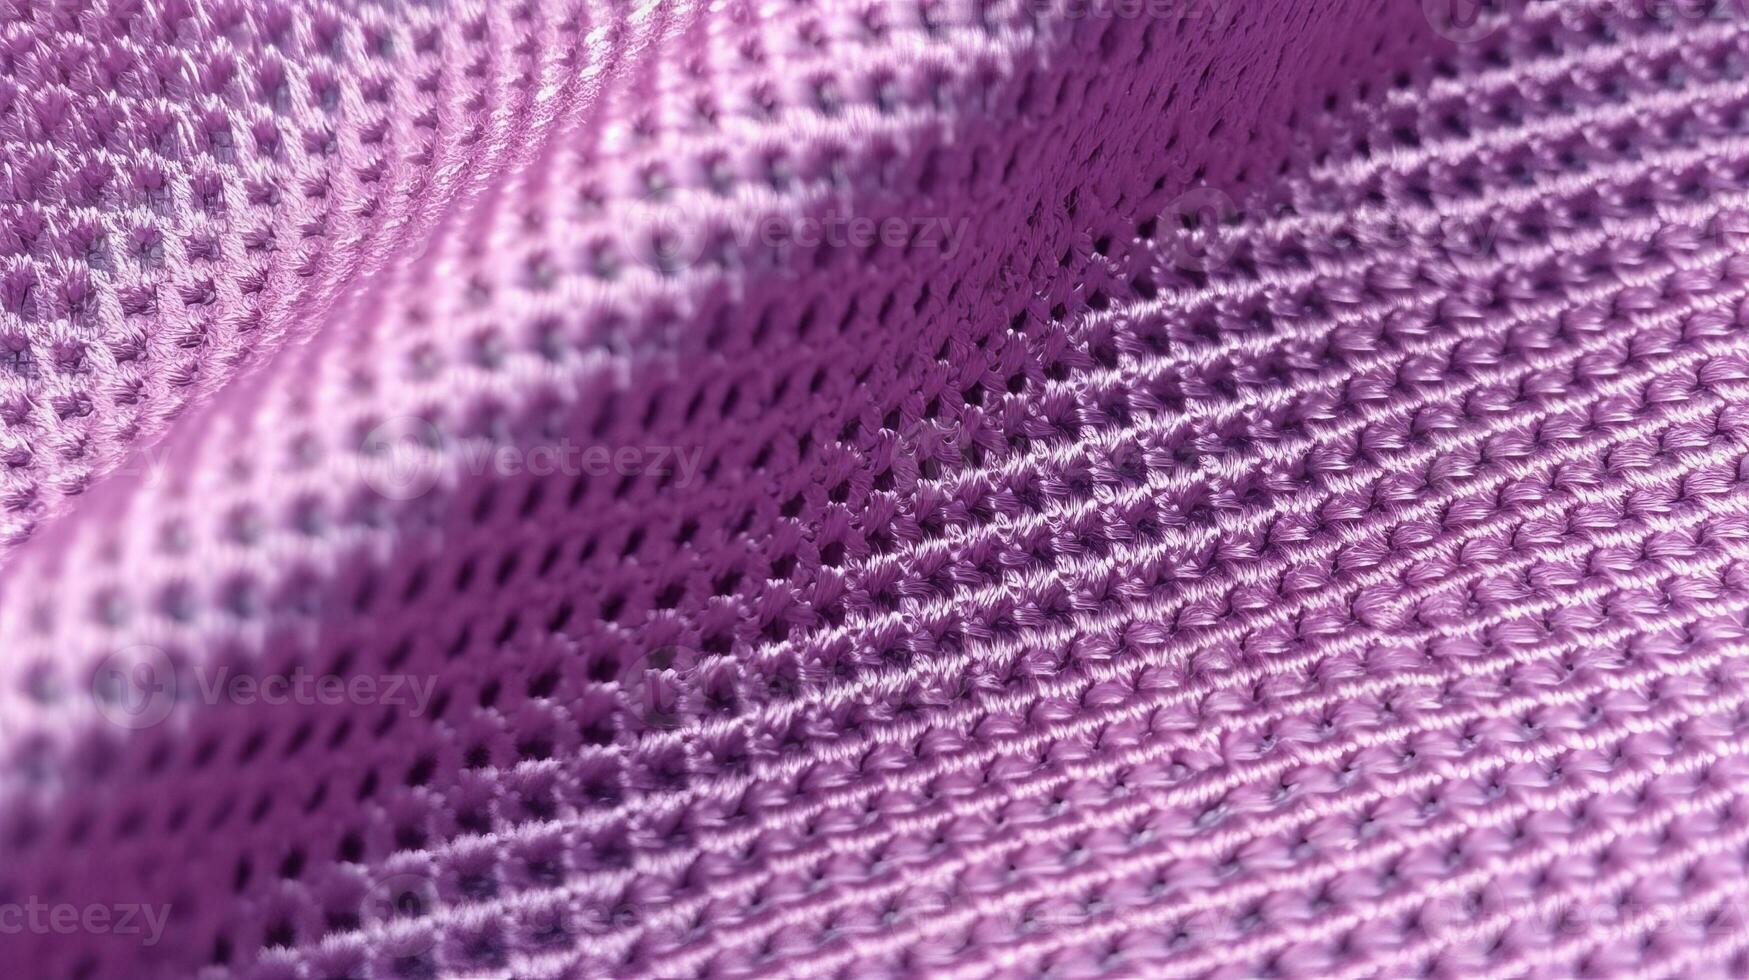 violet football en tissu texture avec air engrener. athlétique porter toile de fond photo